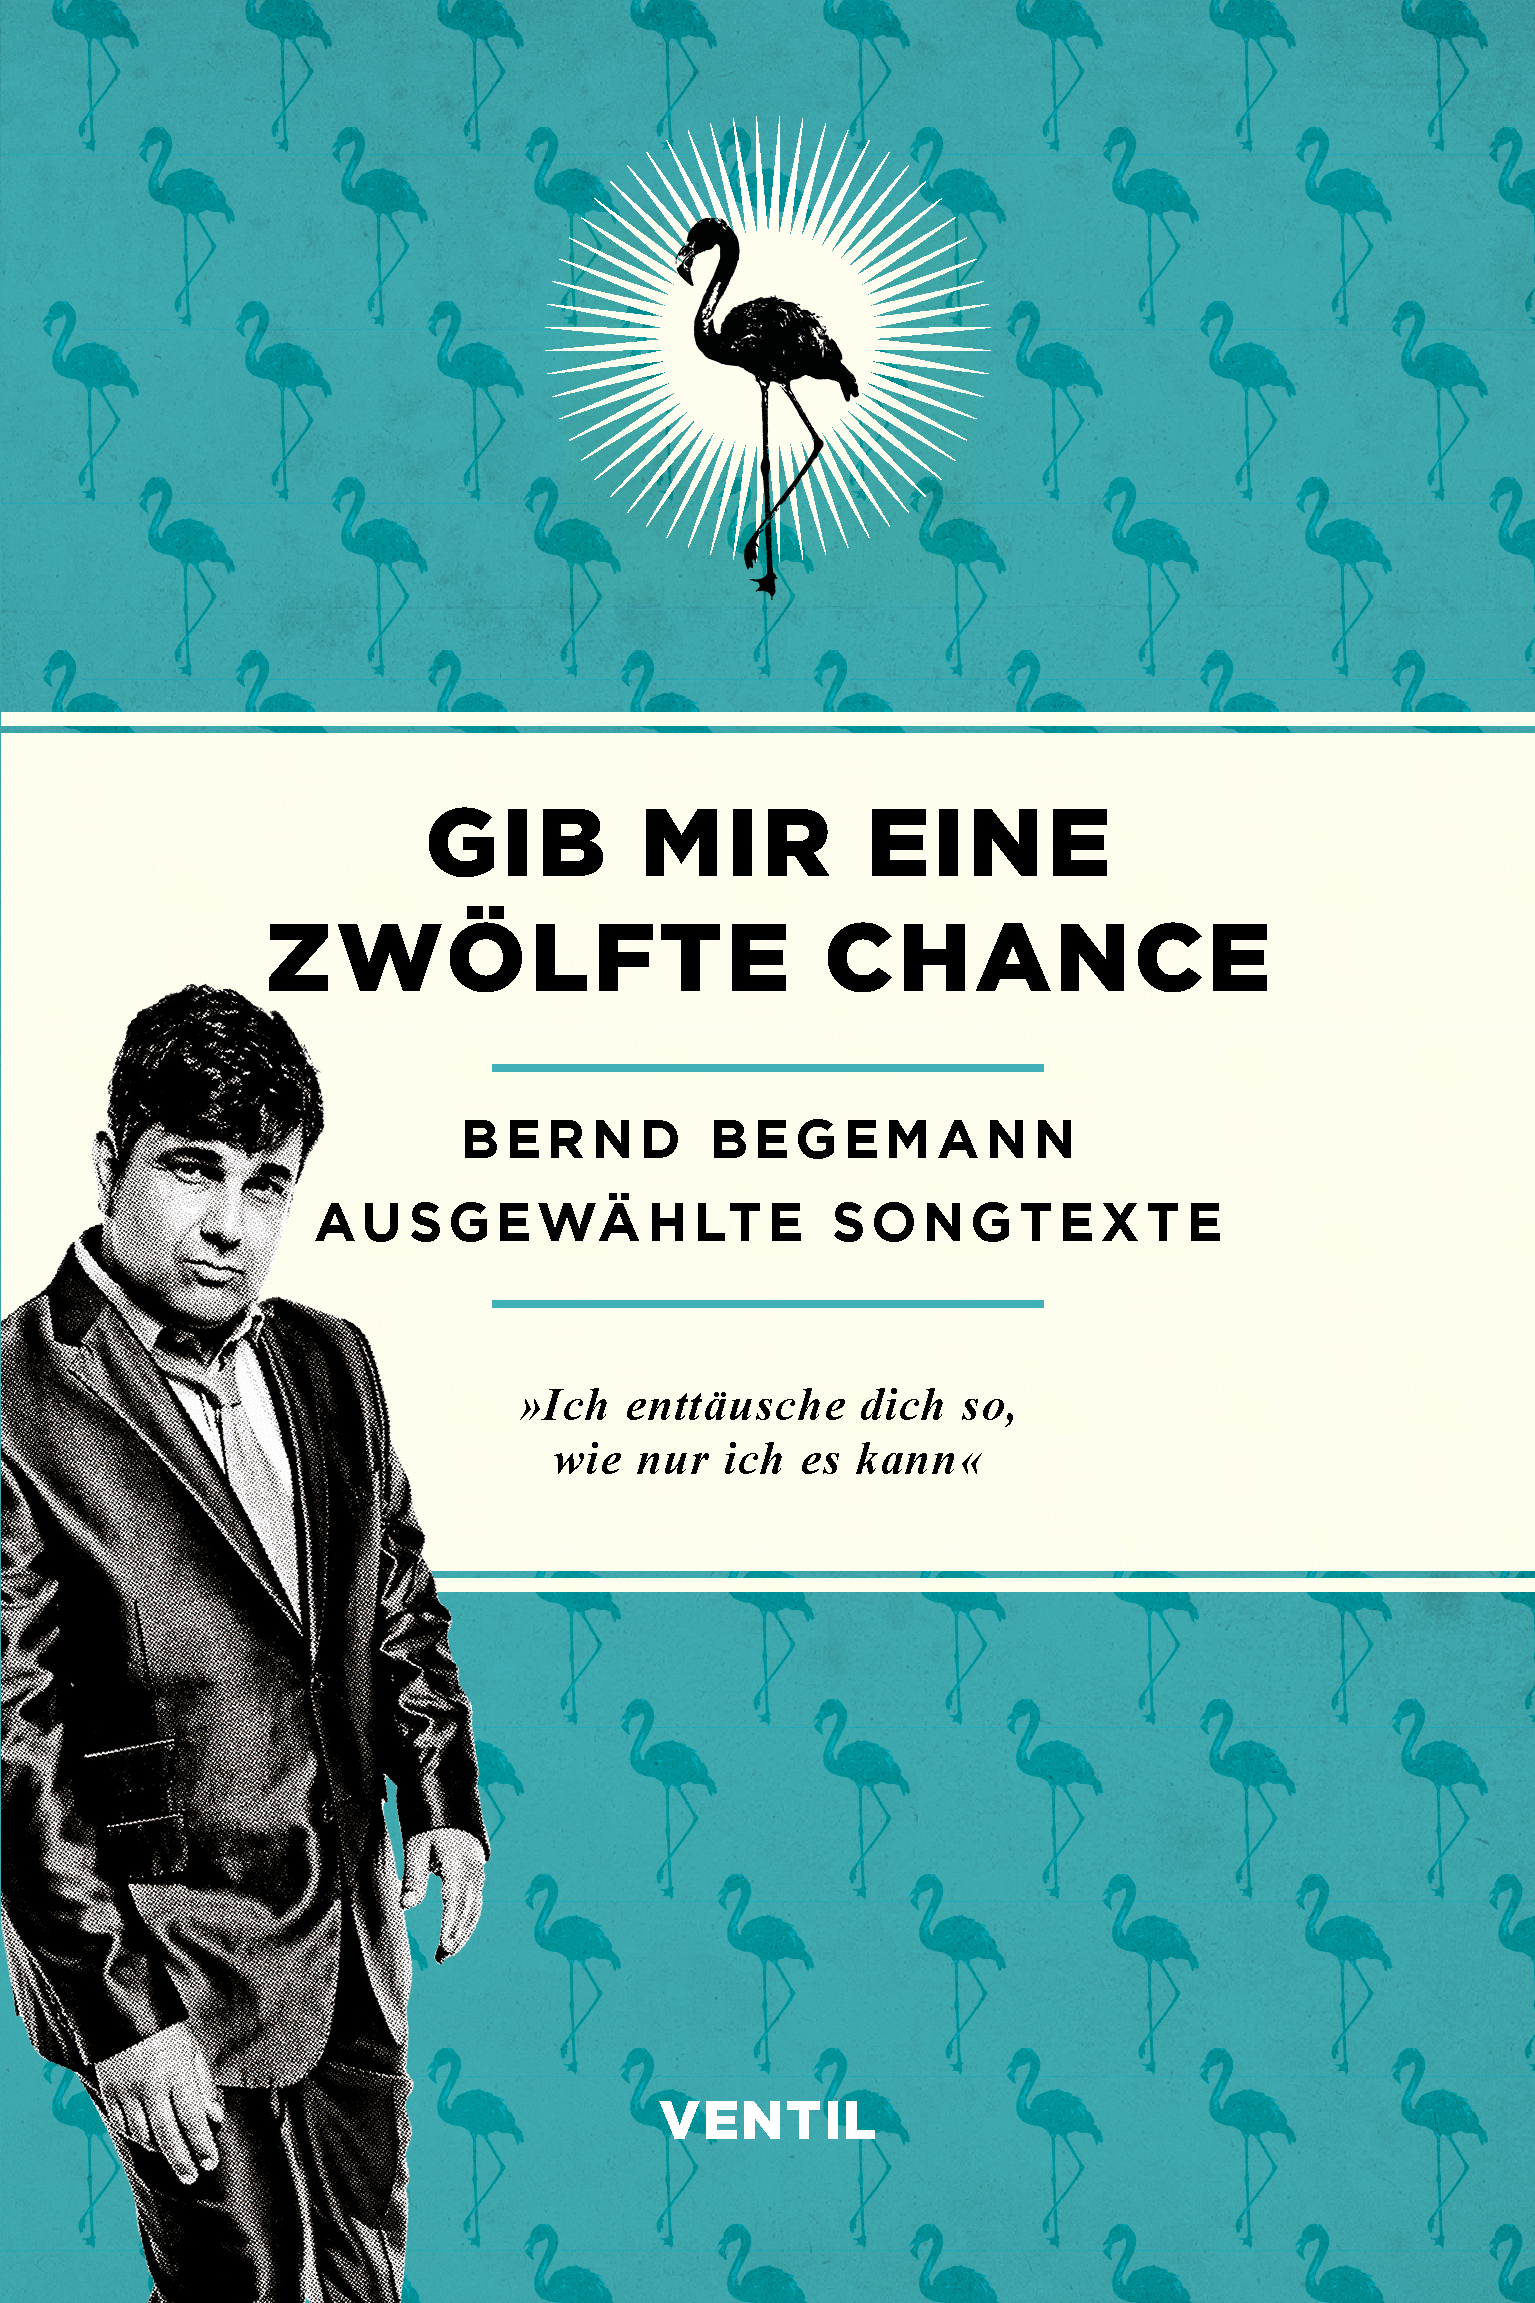 Gib mir eine zwölfte Chance – Ausgewählte Songtexte – Bernd Begemann